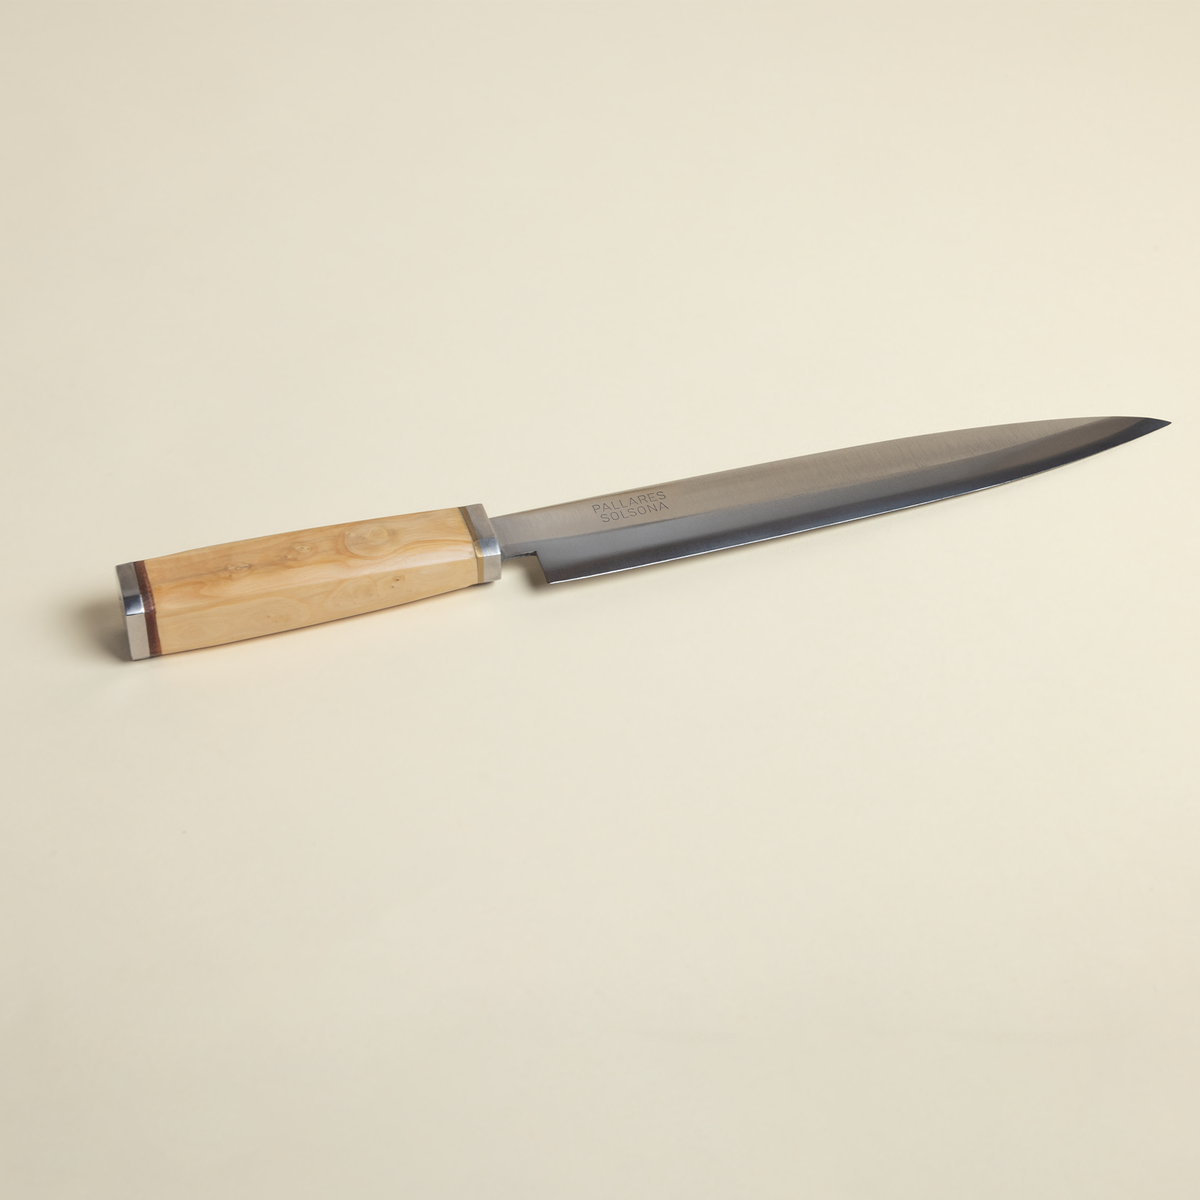 Spanish Fish Knife